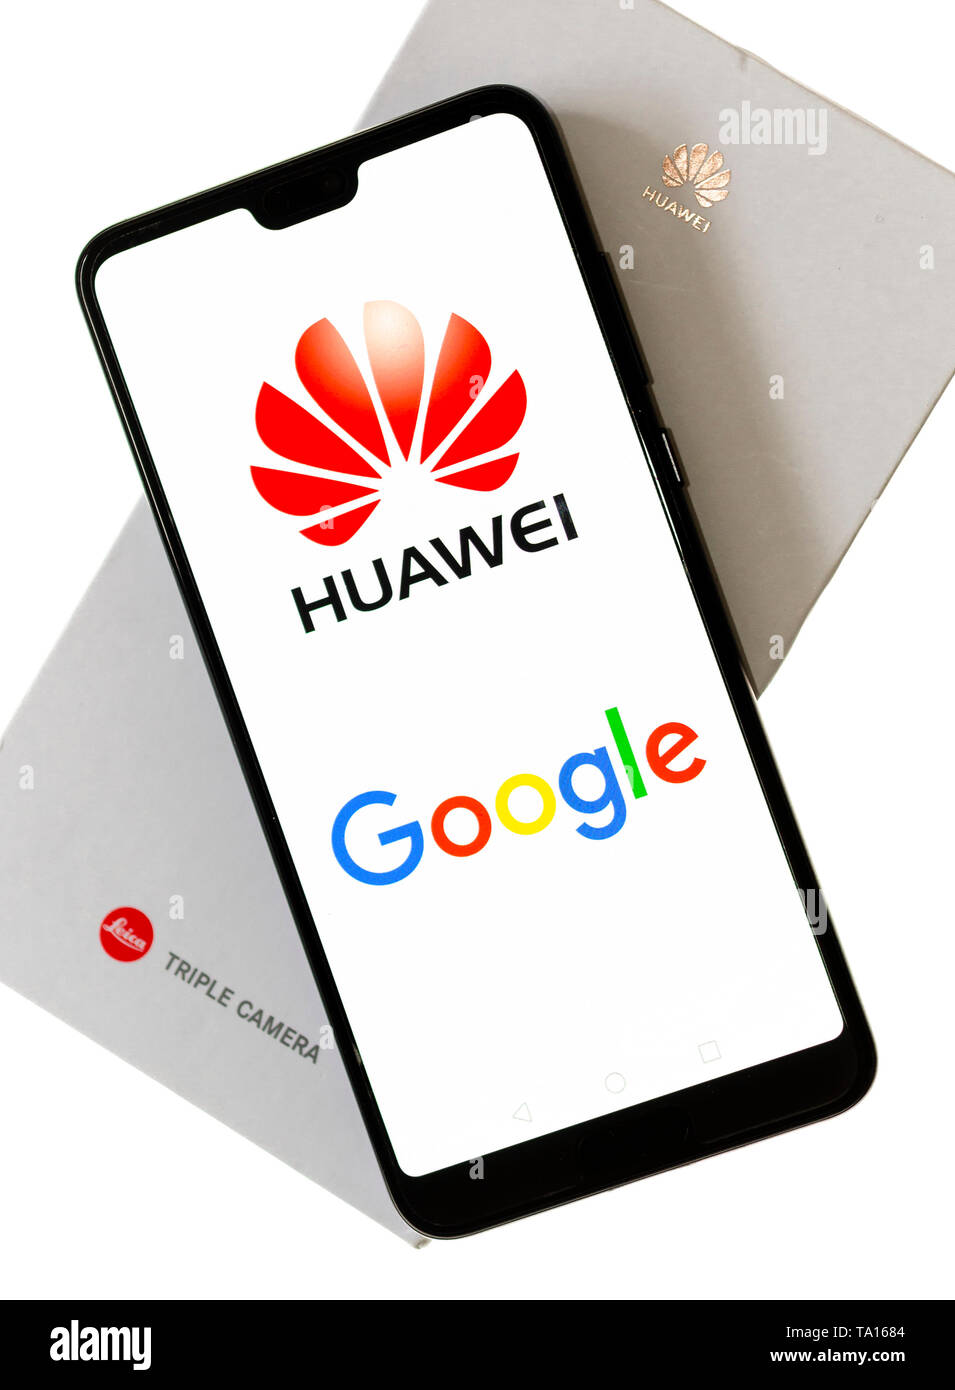 Huawei Telefono cellulare utilizzando Google Apps, Huawei è stata fondata nel 1987 a Shenzhen, Cina Foto Stock